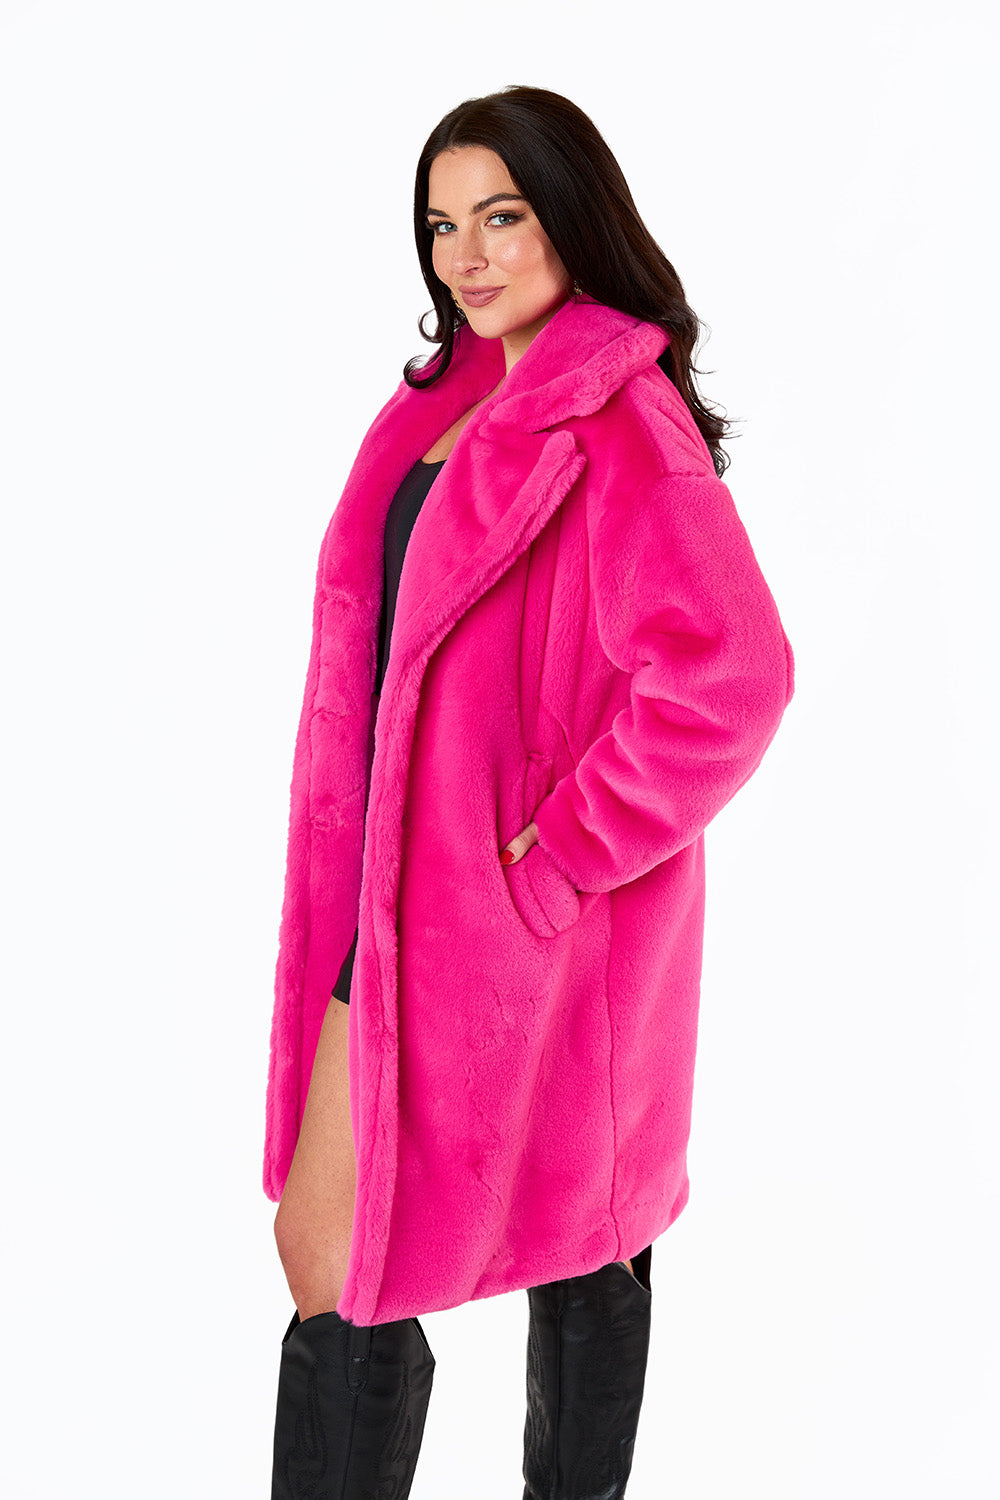 bisou lovelyleopard fur  pink